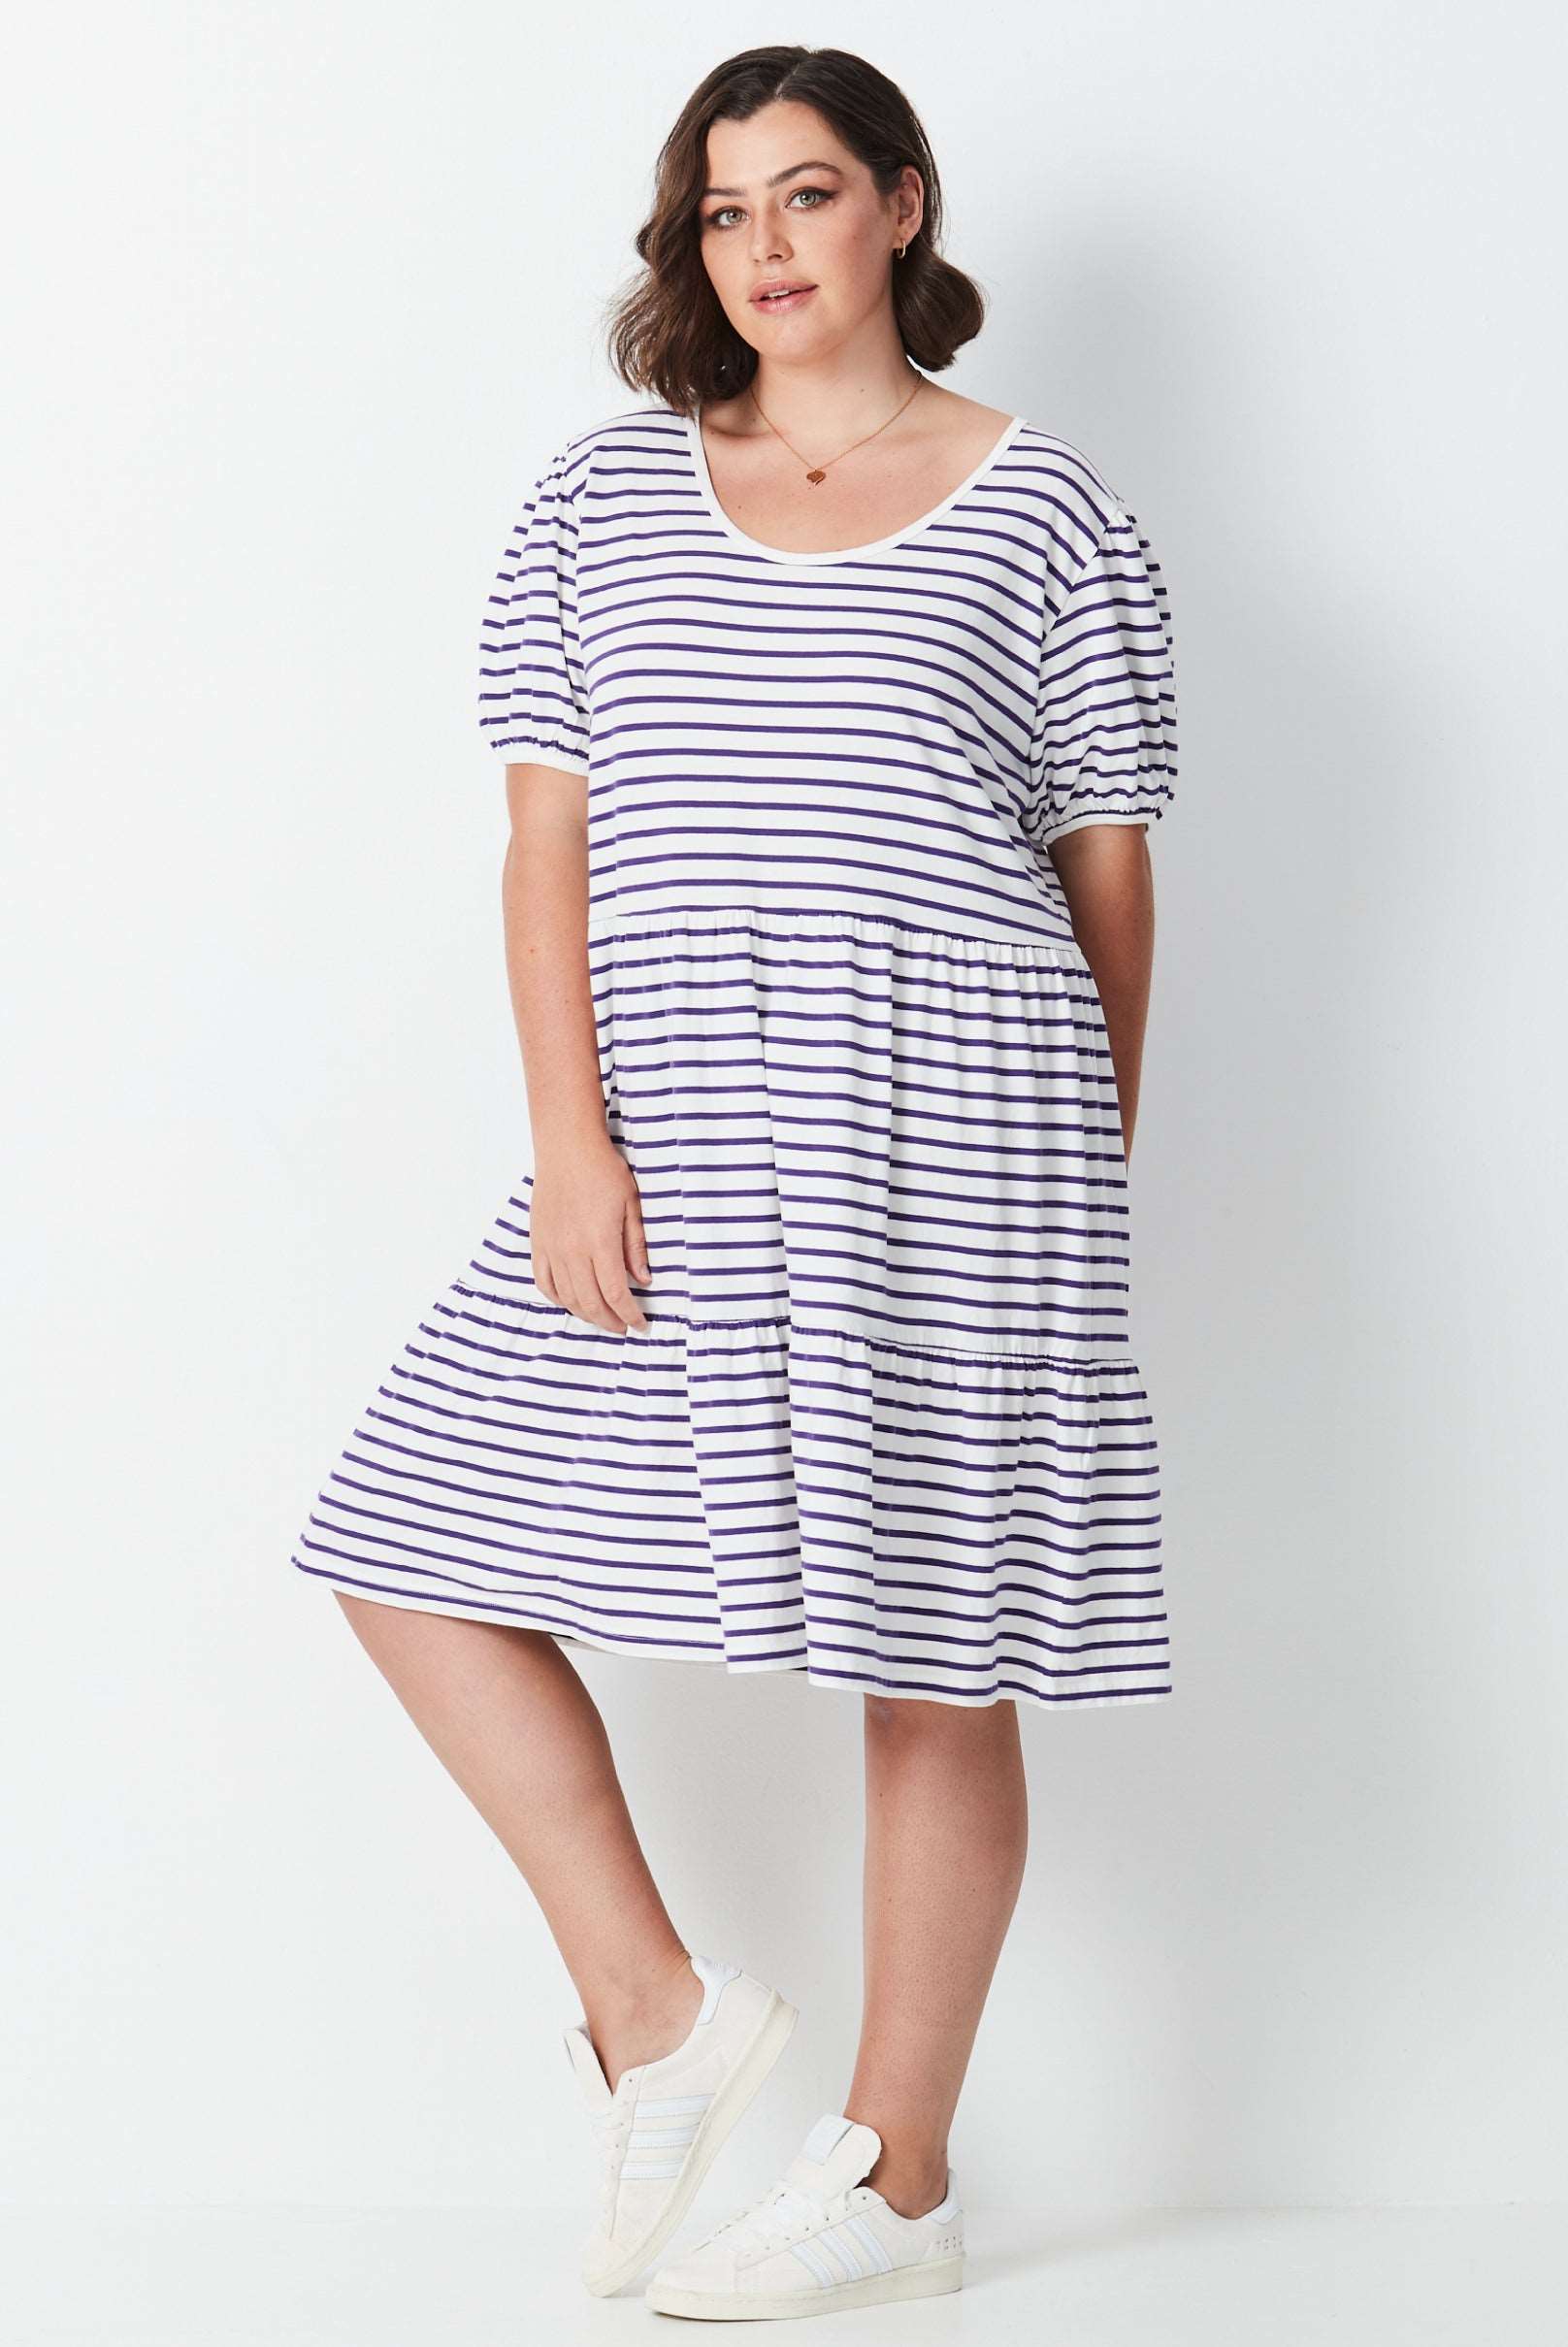 Grape Stripe Dress - Grape/White